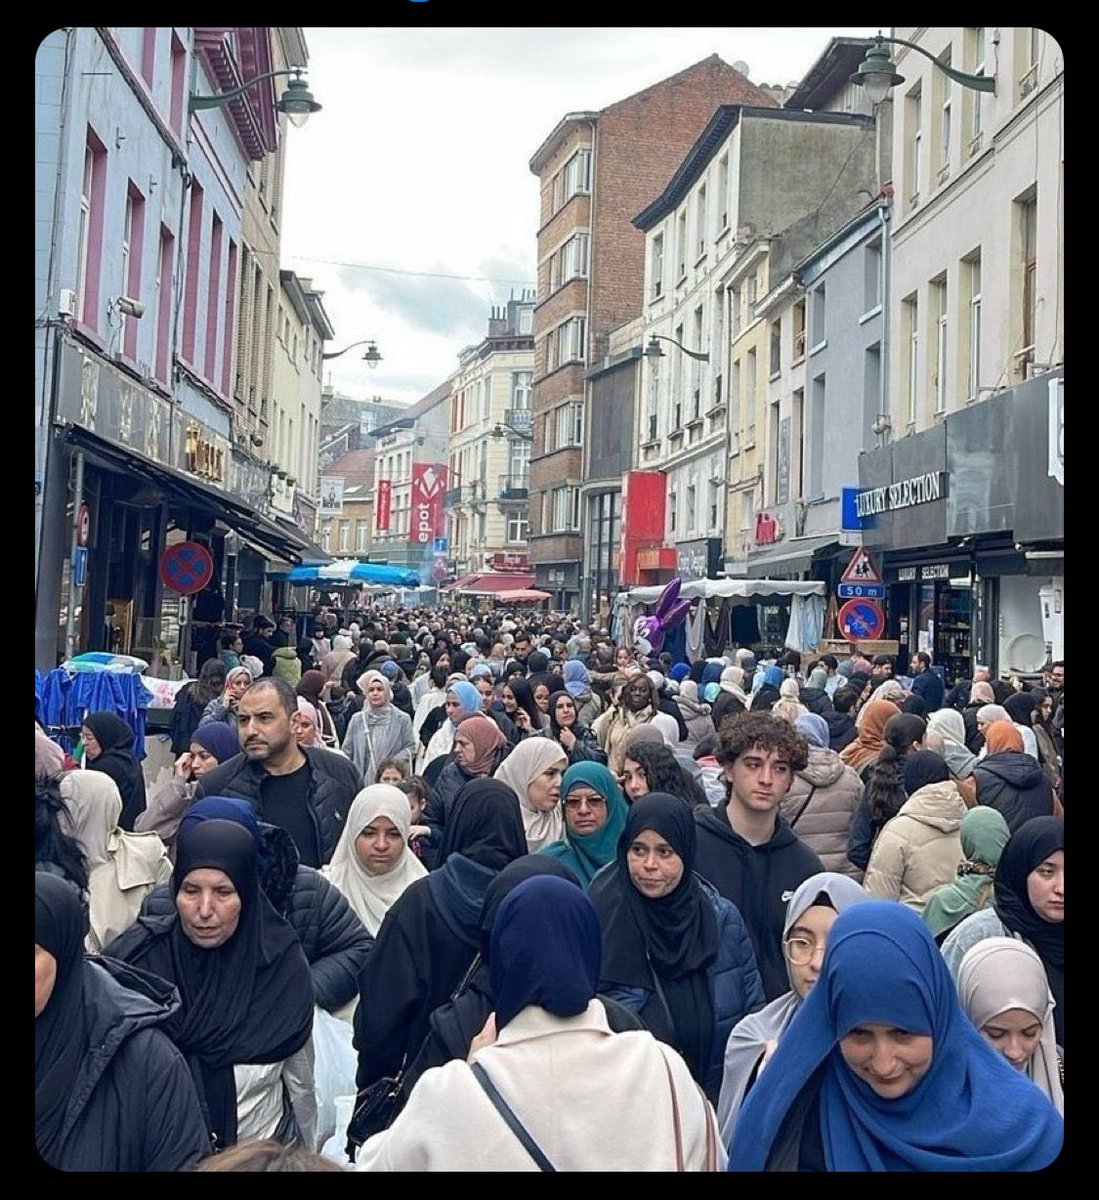 Esta fotografía fue tomada en Molenbeek, #Brussels .

La imagen se volvió viral en las redes sociales por parte de iraníes que escribieron 'en las calles de Bruselas hay más mujeres usando Hijab que en las de Irán'.

Están asombrados de que en Irán, niñas y mujeres jóvenes…